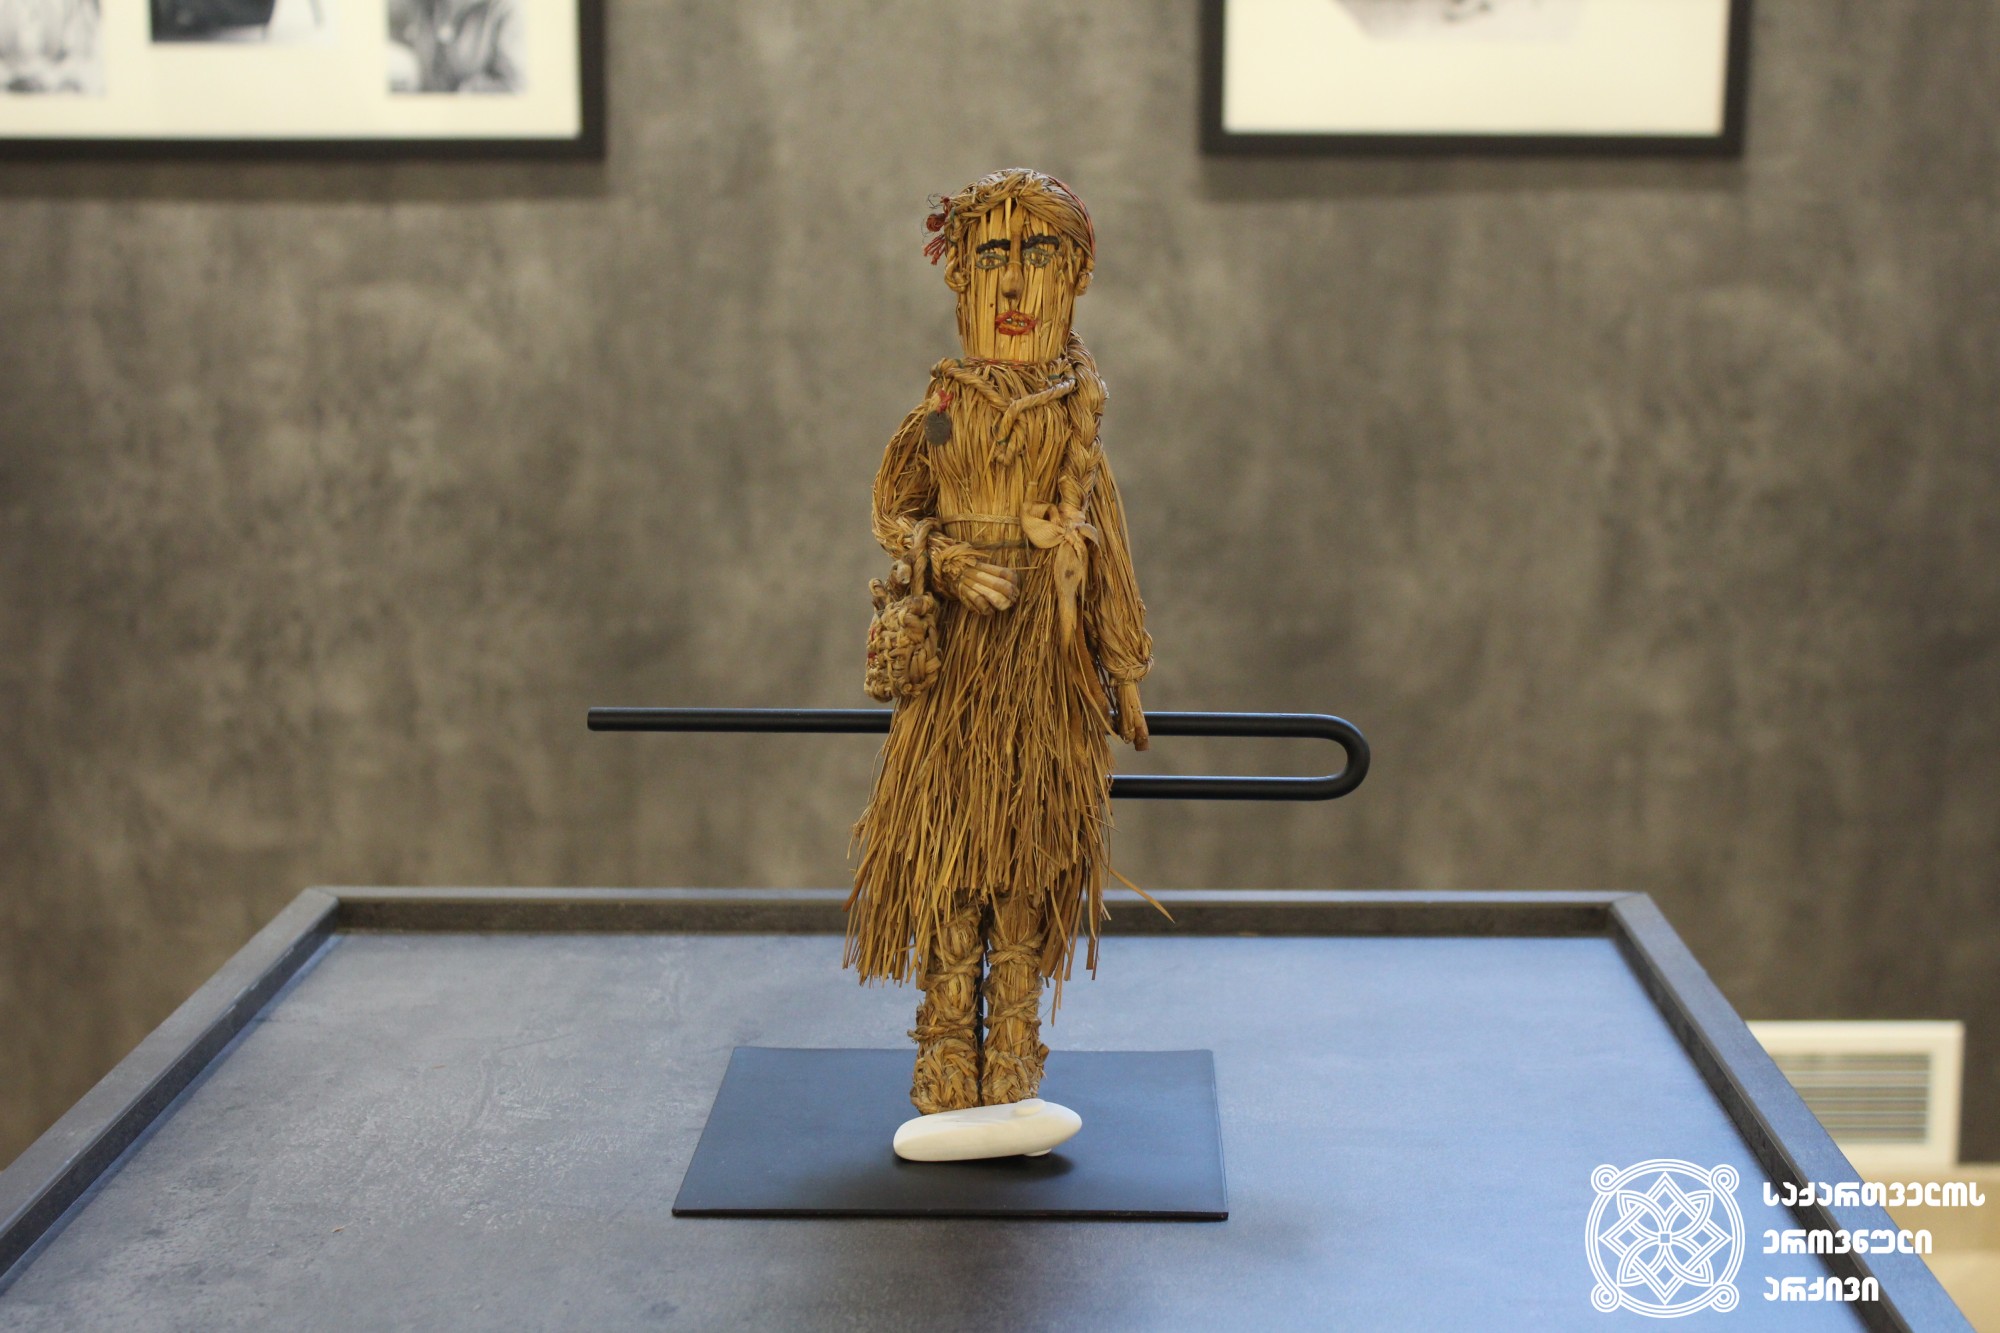 ტუსაღების მიერ ლიზიკო ქავთარაძისთვის ცოცხის ტარისგან გაკეთებული თოჯინა. <br>
A doll made with the broom handle by the prisoners for Liziko Kavtaradze